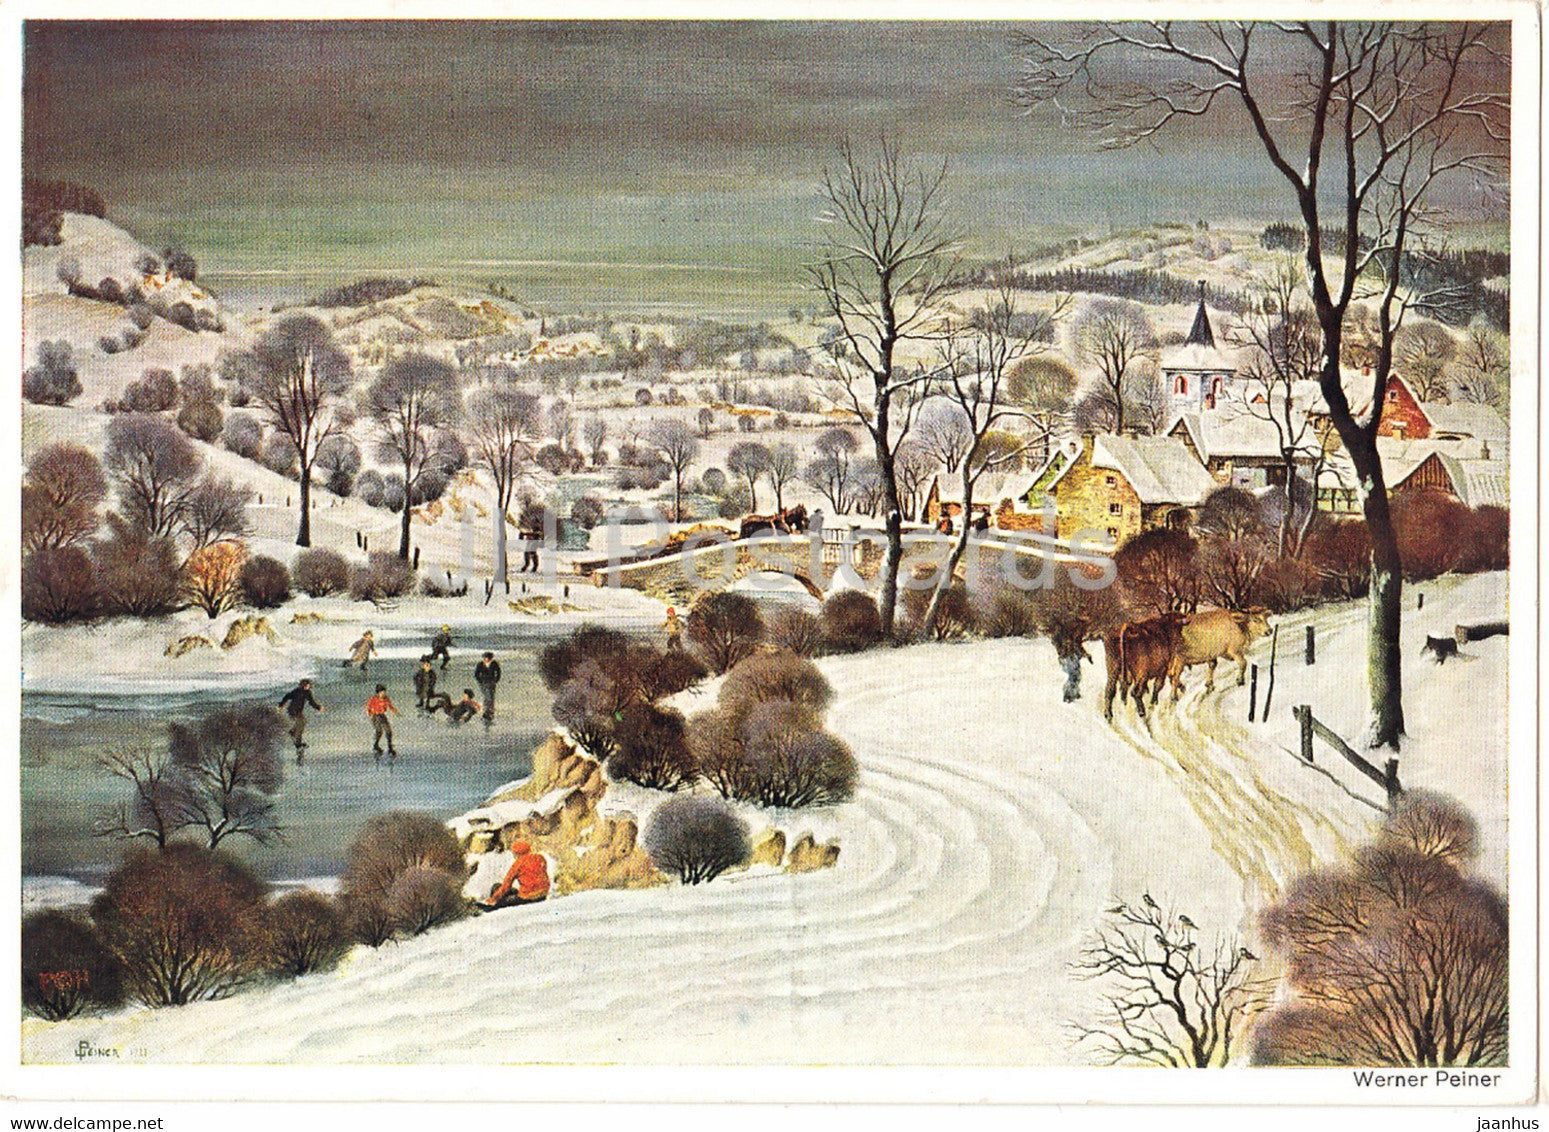 painting by Erner Peiner - Eifeldorf im Schnee - 91 - German art - Germany - unused - JH Postcards